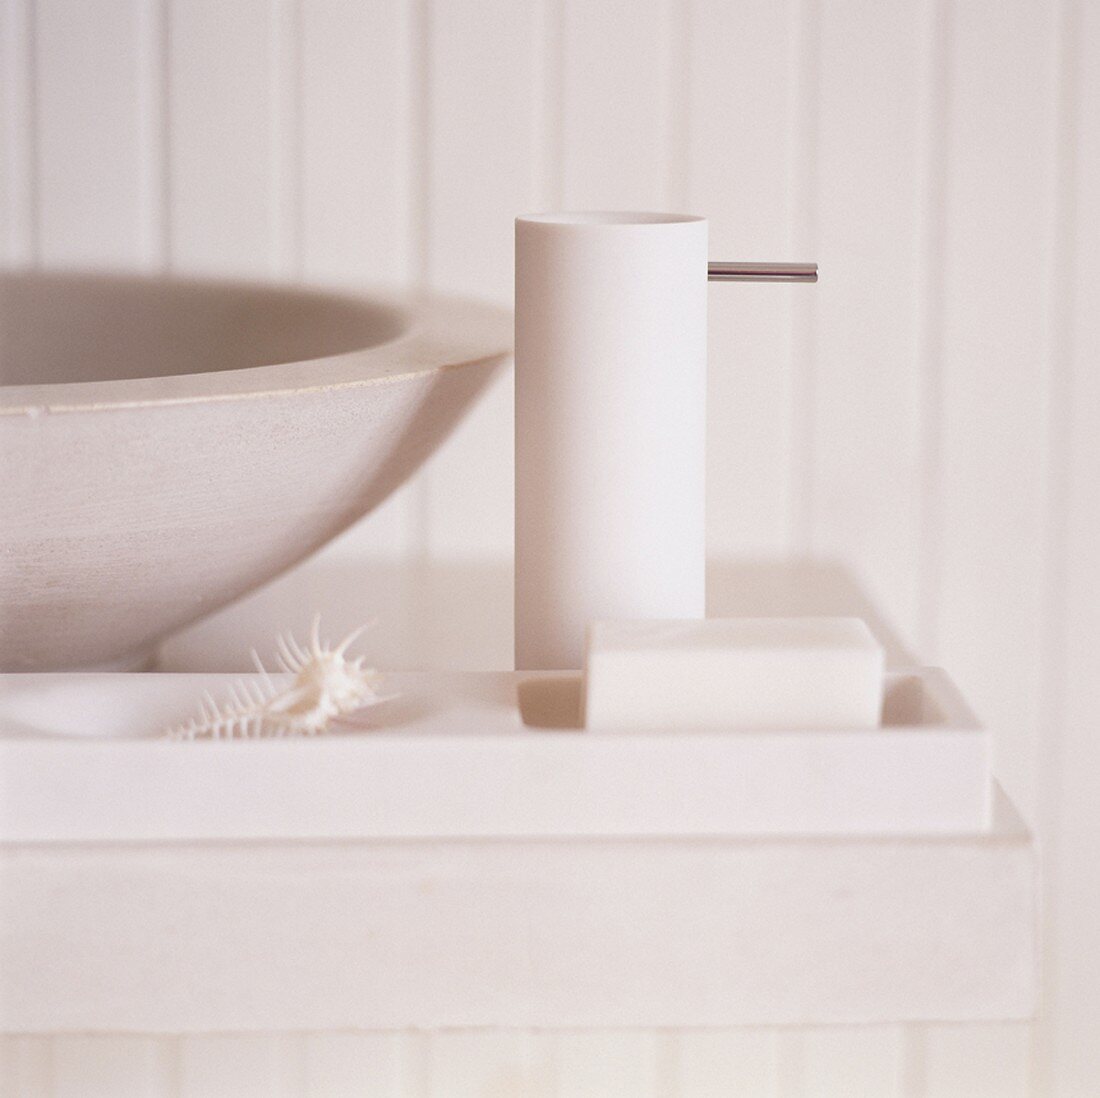 Ausschnitt eines Seifenspenders und einer Seife neben einem runden Waschbecken